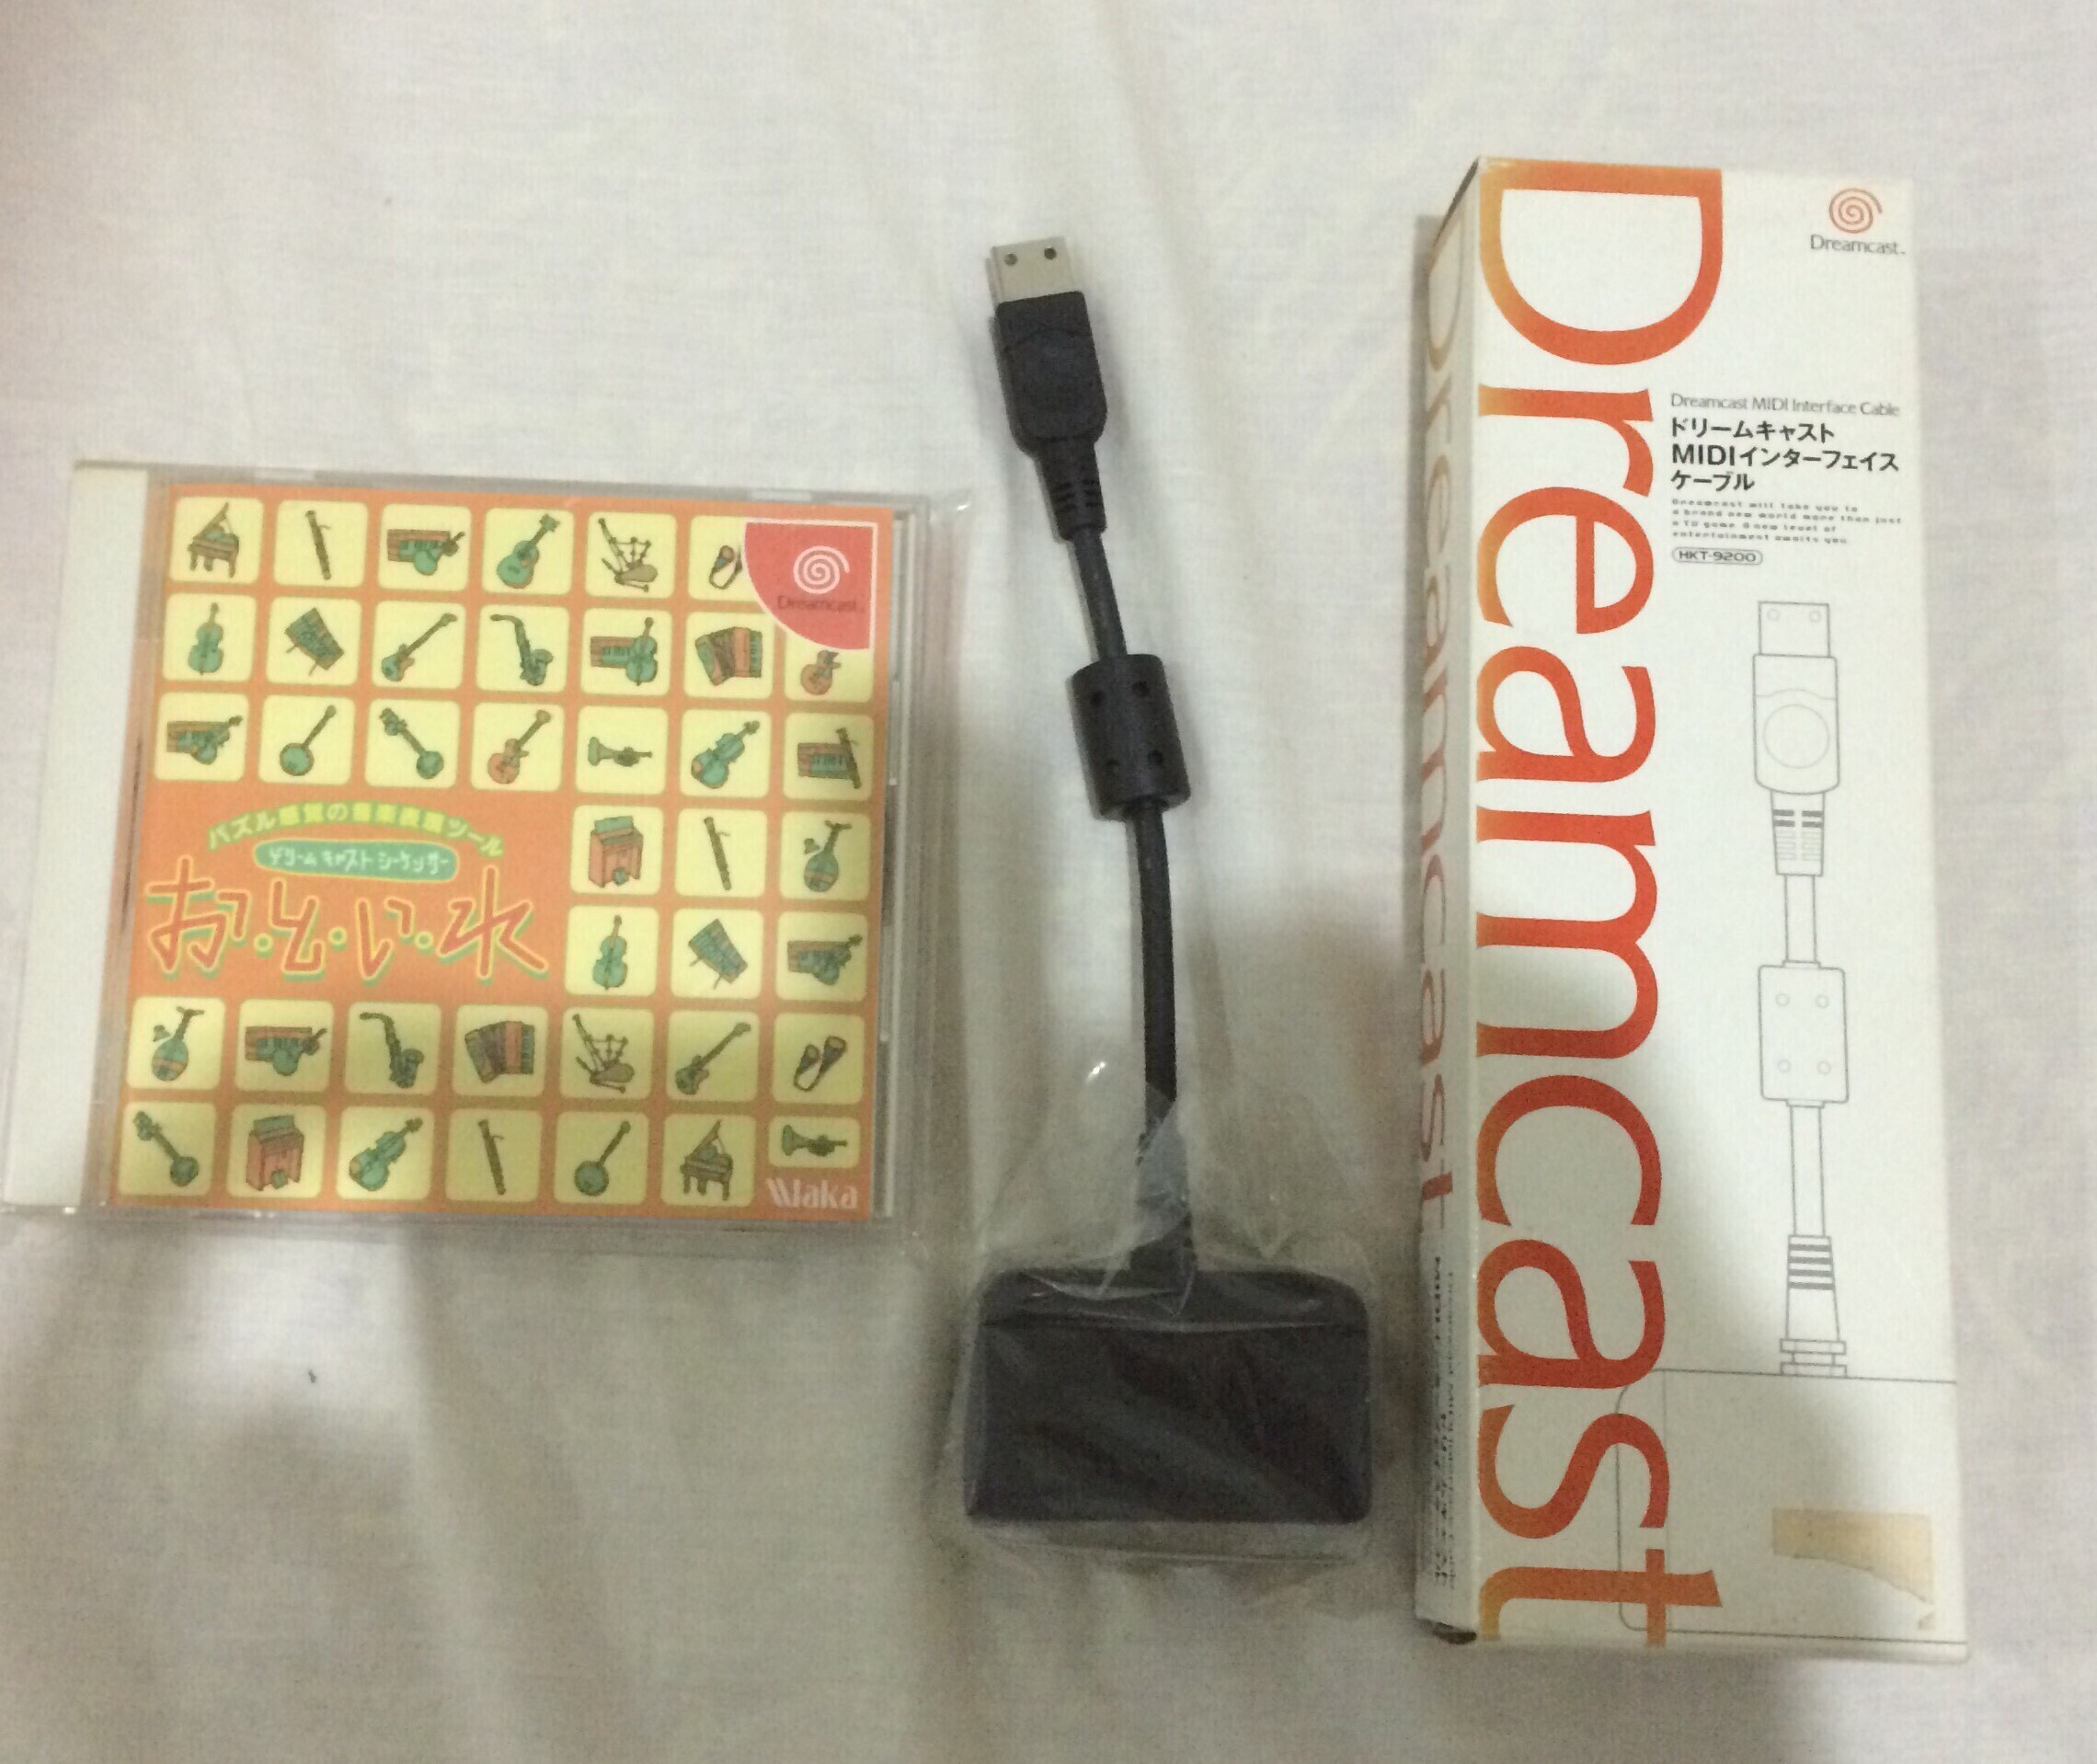  Sega Dreamcast MIDI Interface Cable